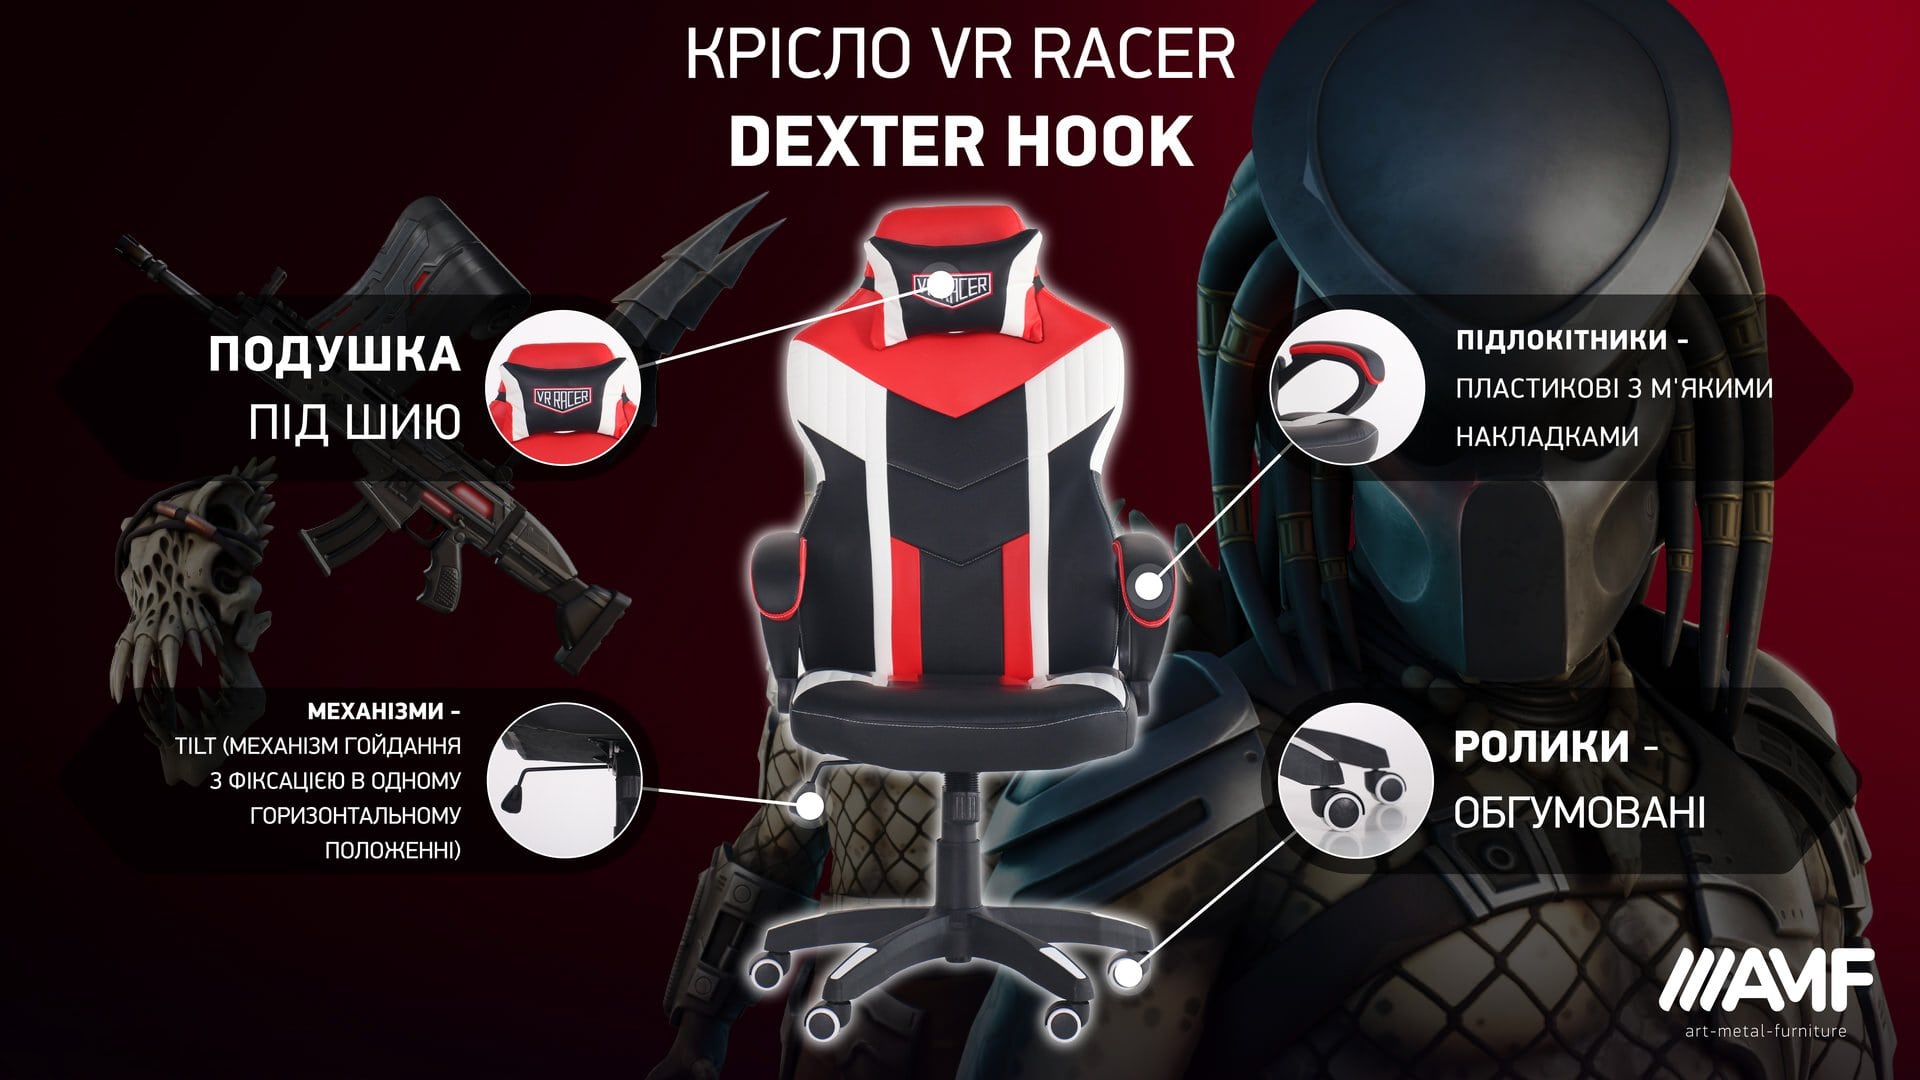 Кресло VR Racer Dexter Hook описание